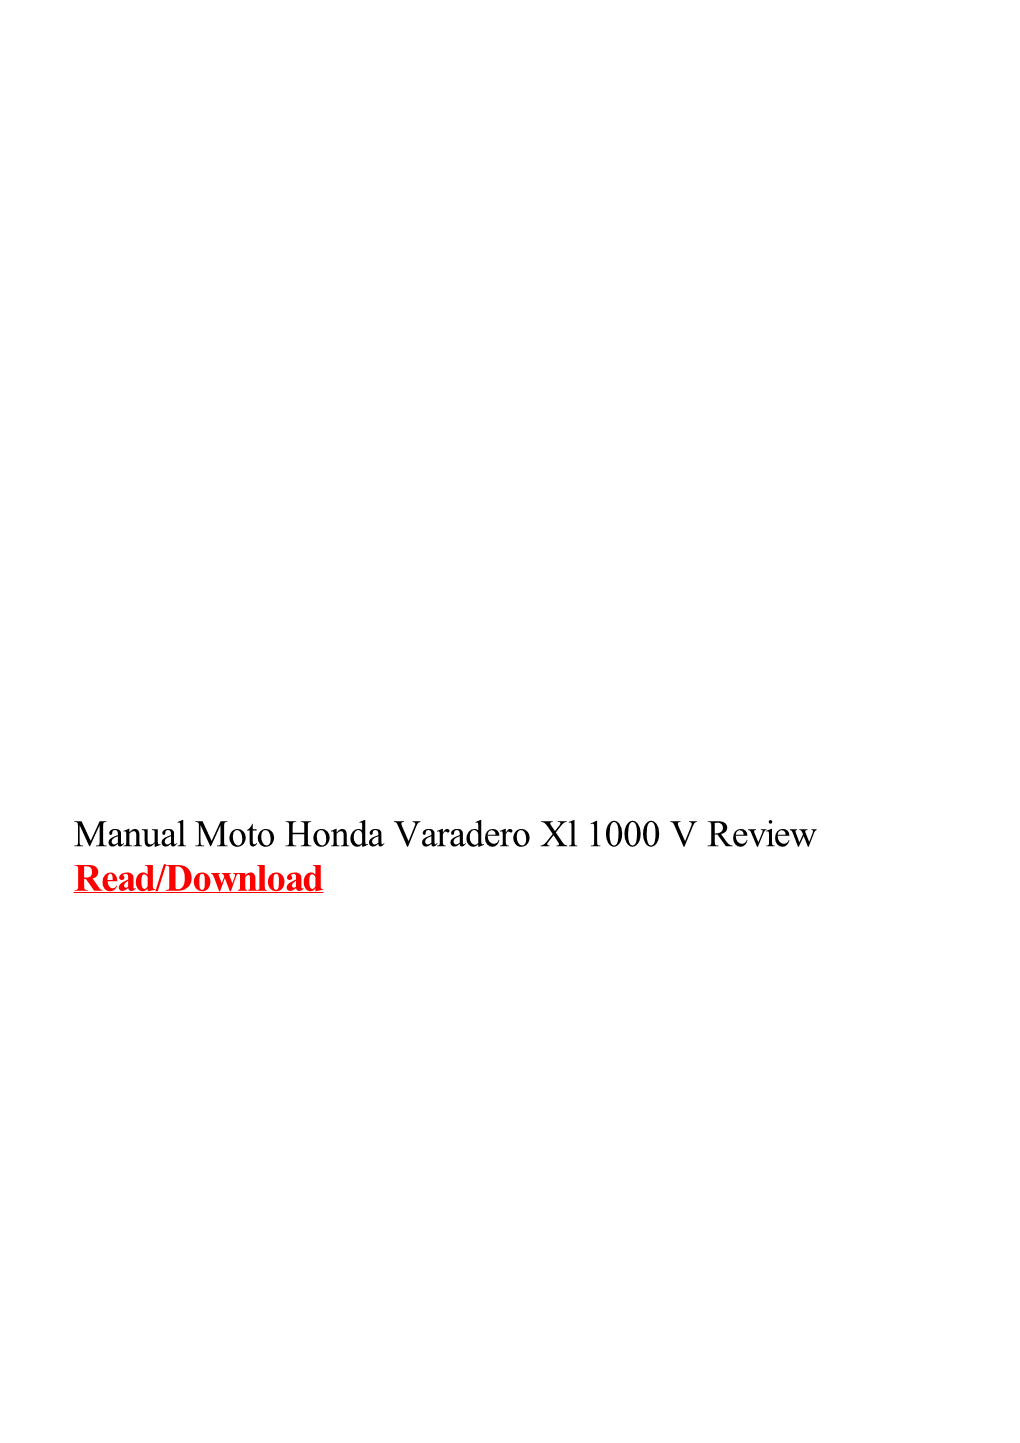 Manual Moto Honda Varadero Xl 1000 V Review